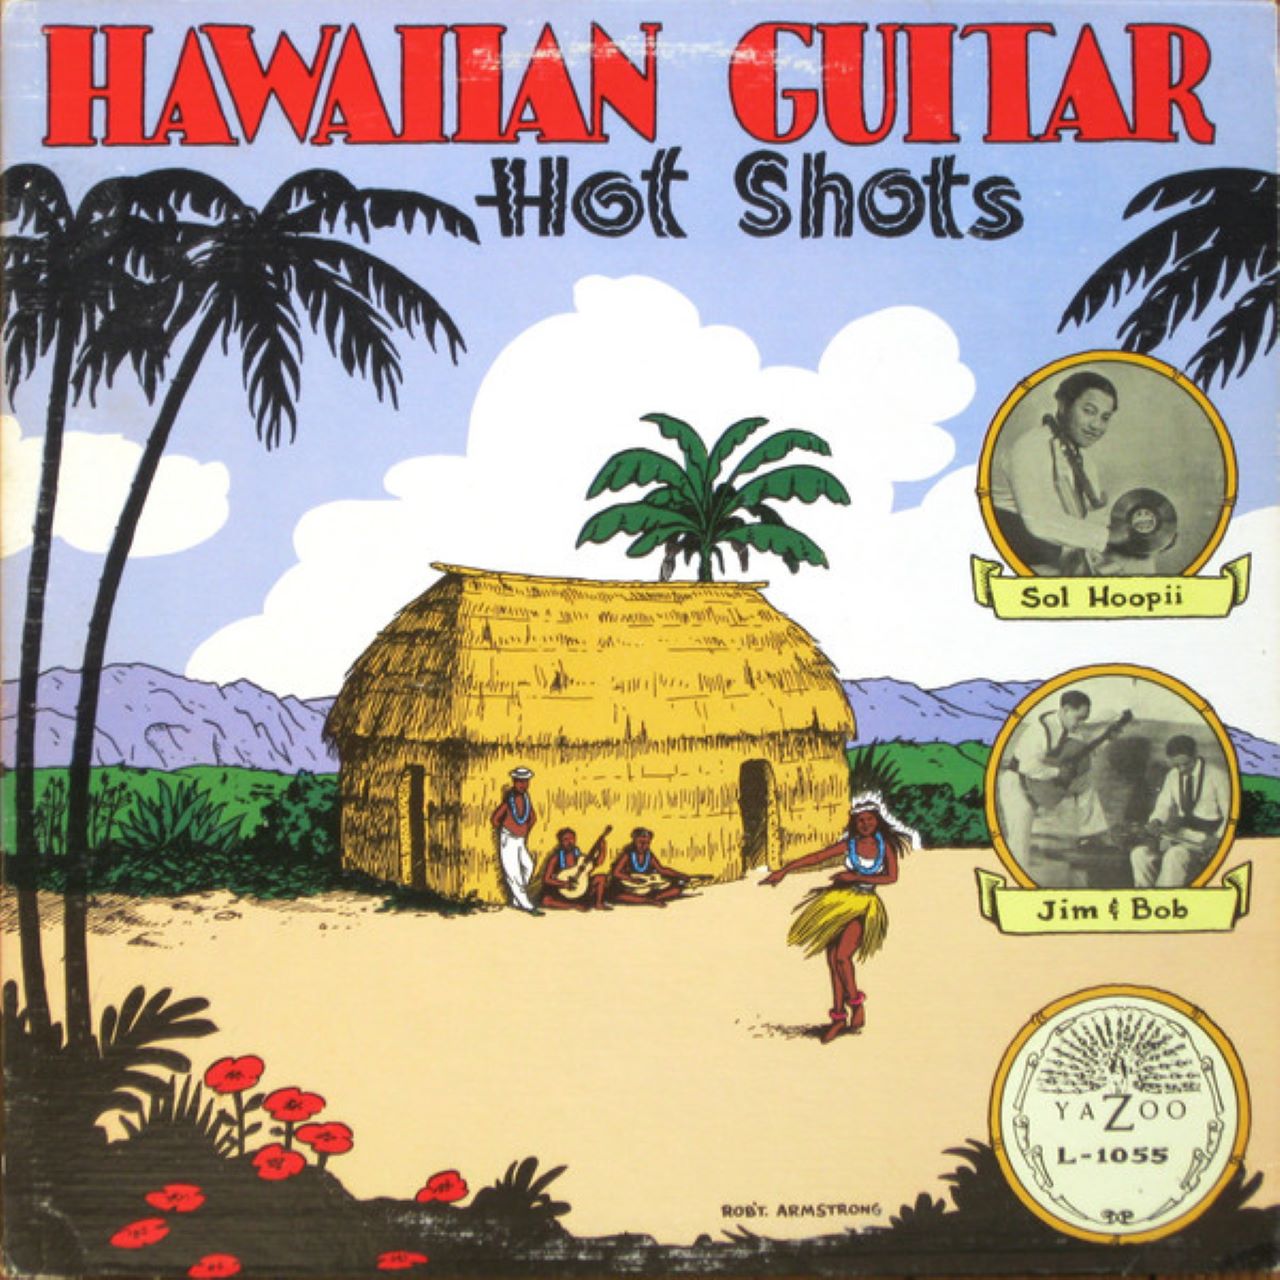 A.A.V.V. - Hawaiian Guitar Hot Shots cover album